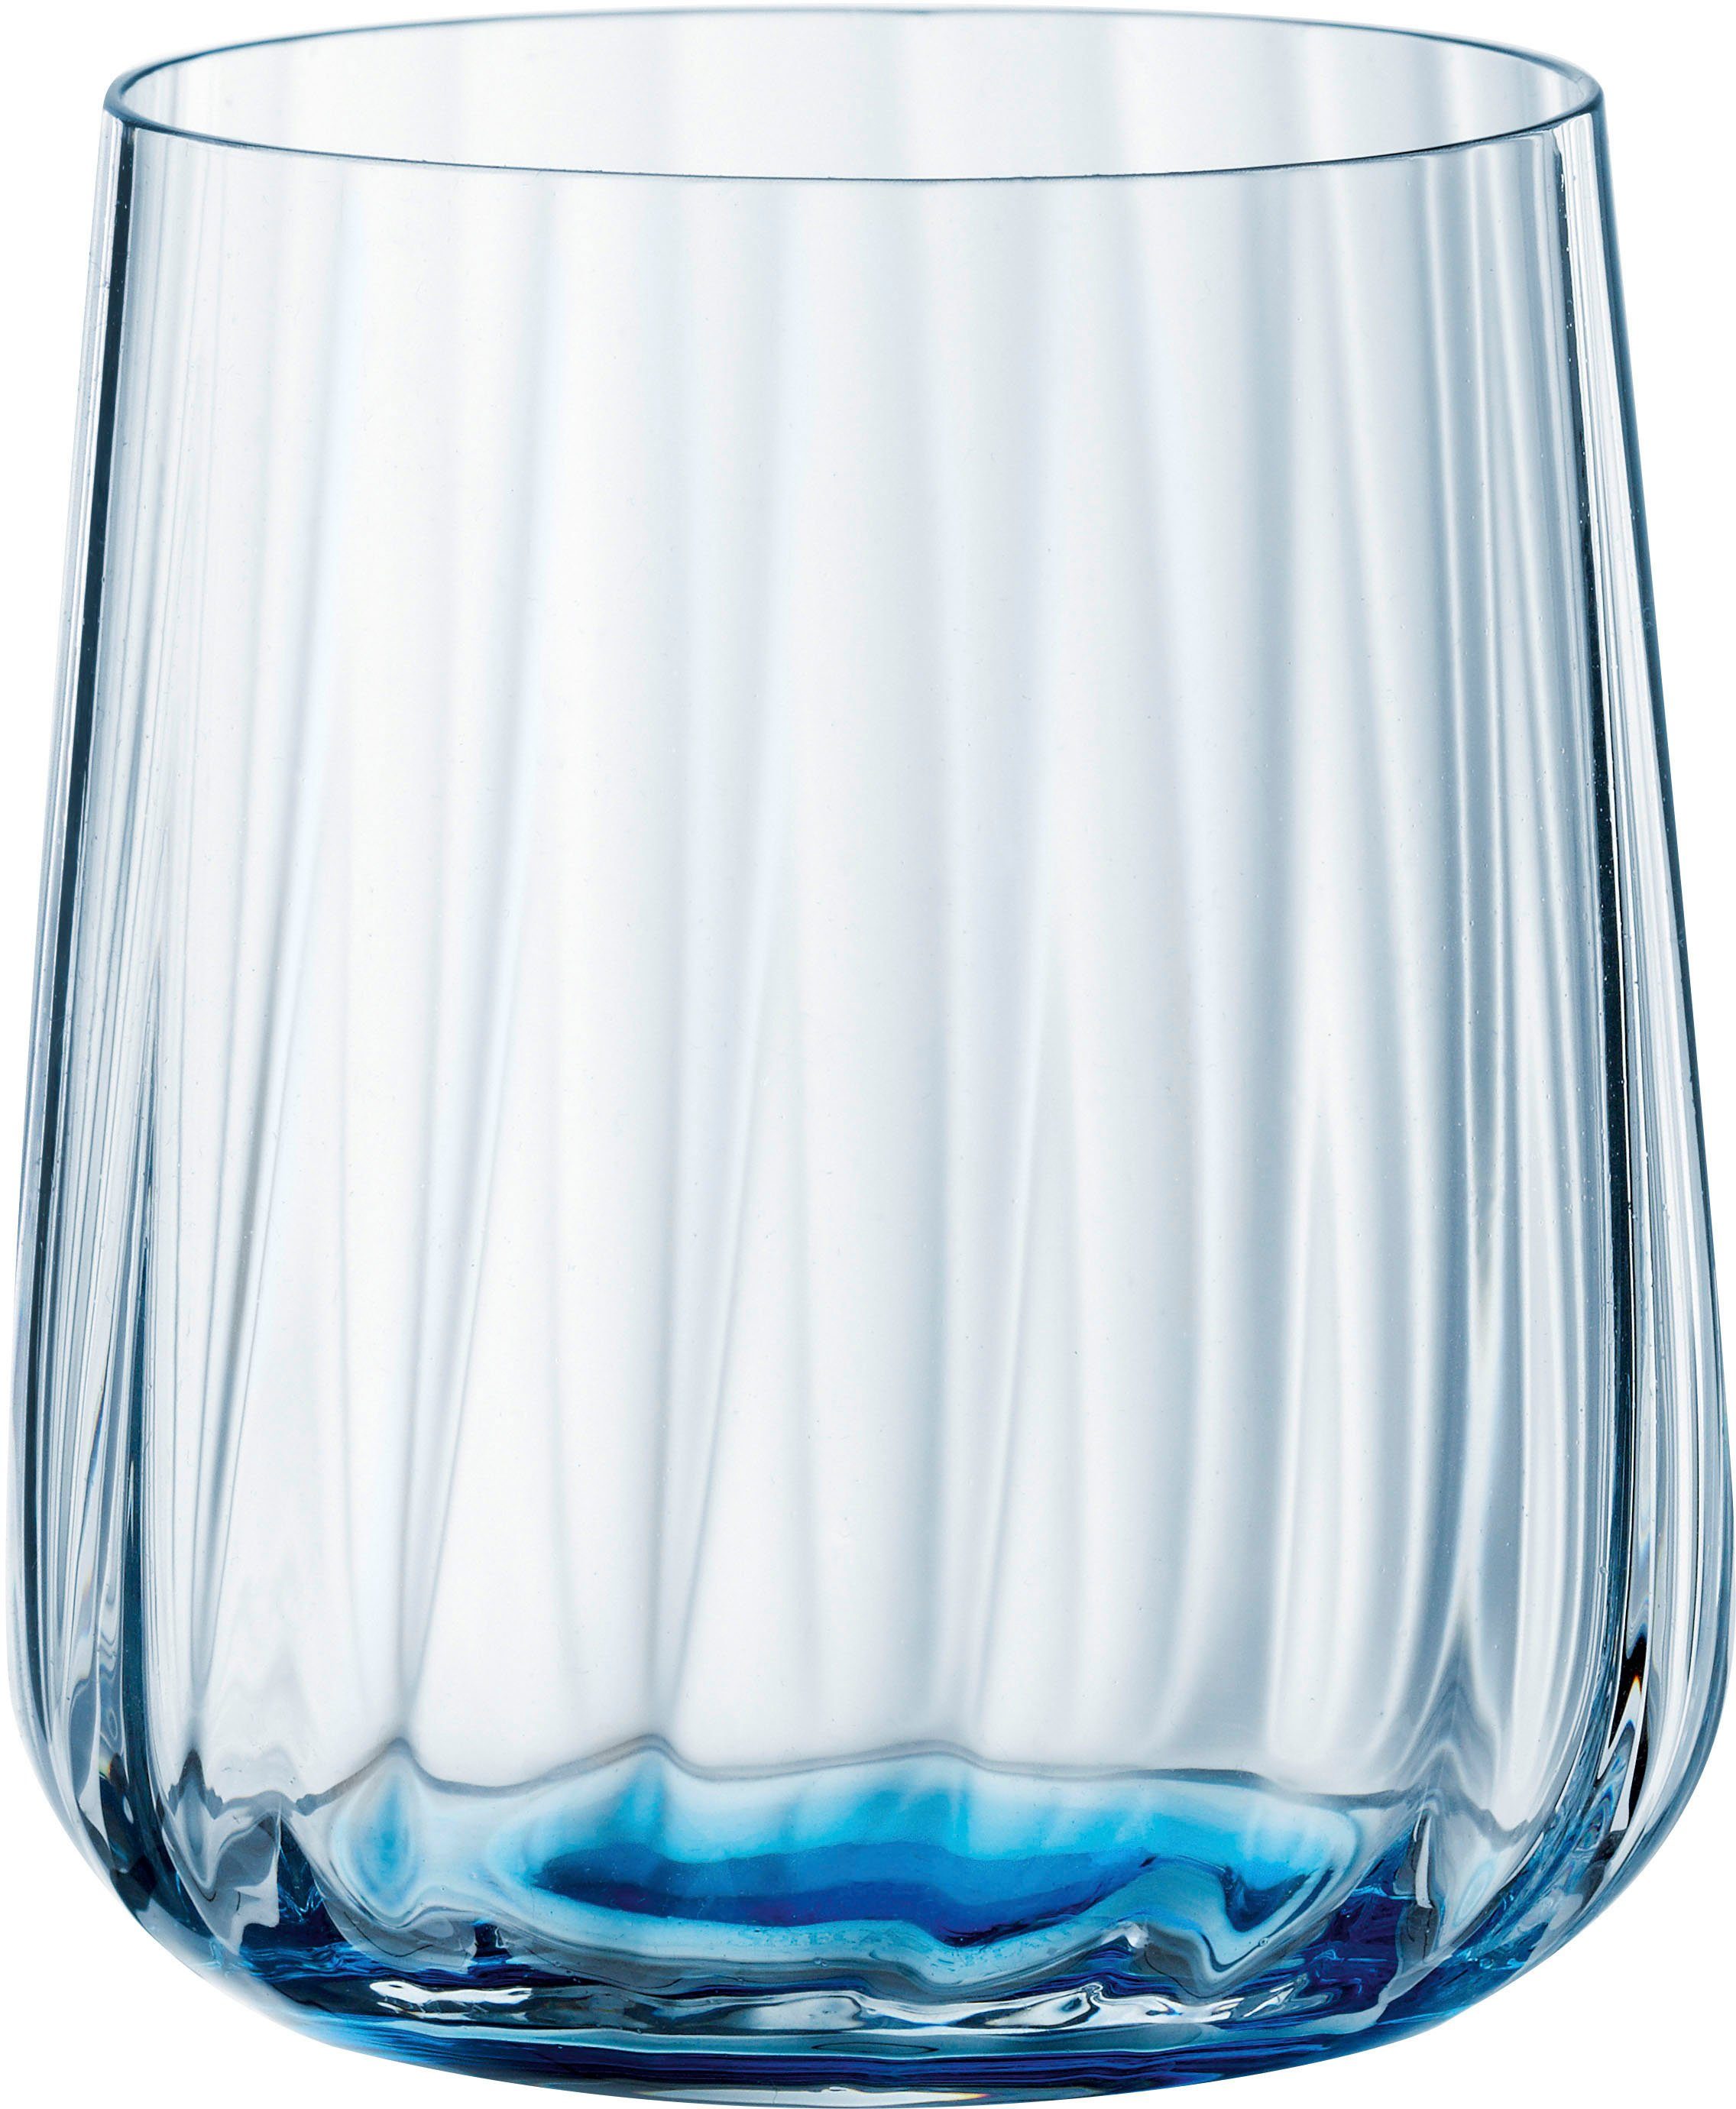 SPIEGELAU Becher LifeStyle, Kristallglas, 340 ml, 2-teilig ocean